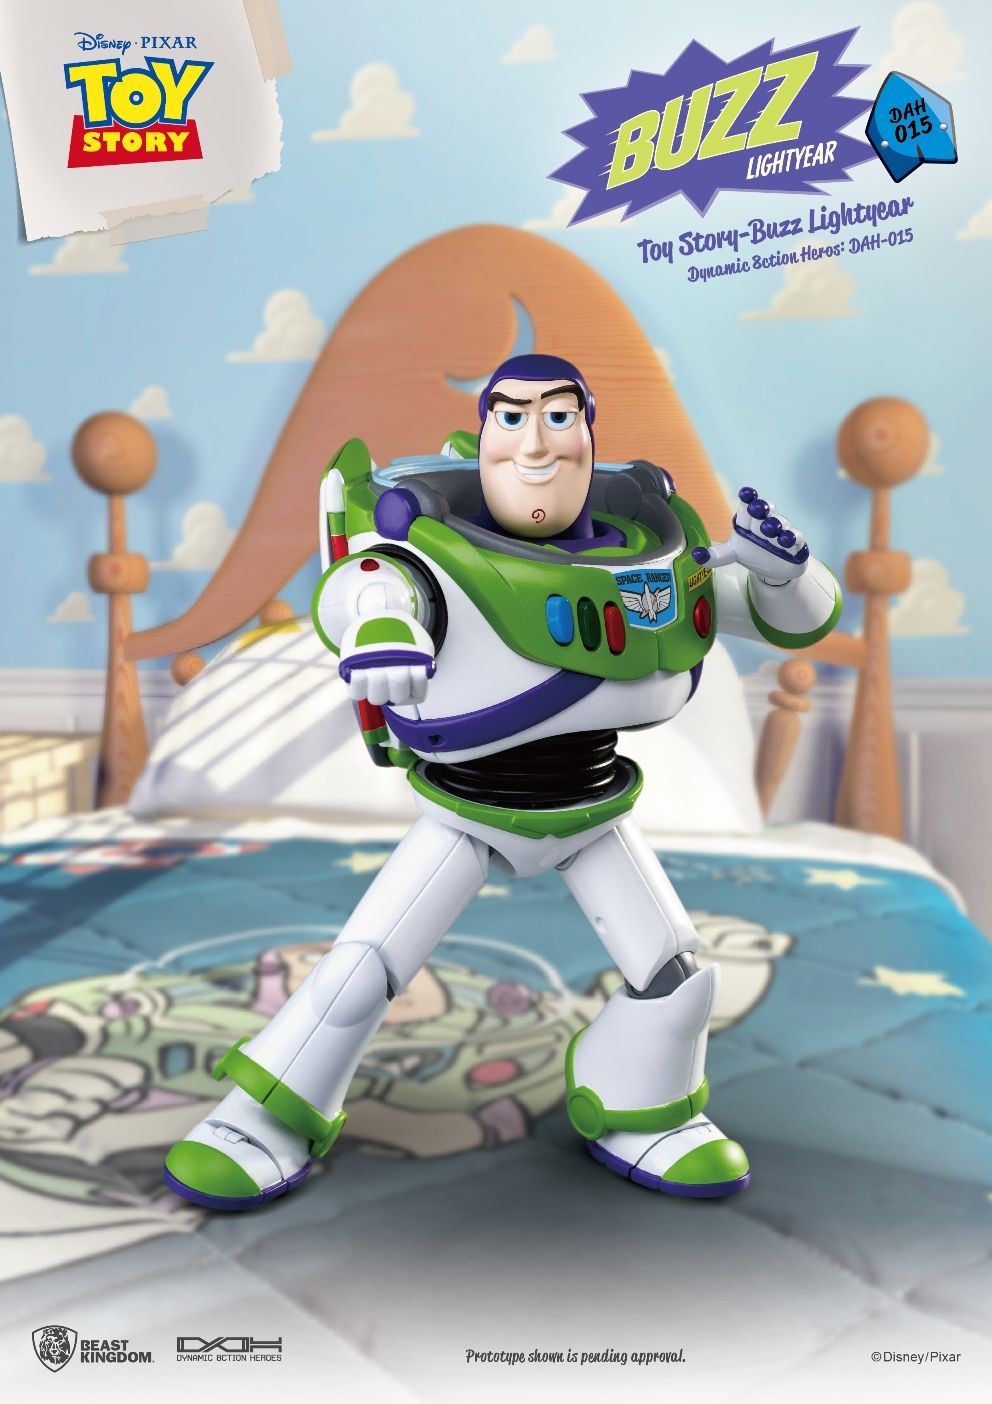 Afig Toy Story Buzz Lightyear